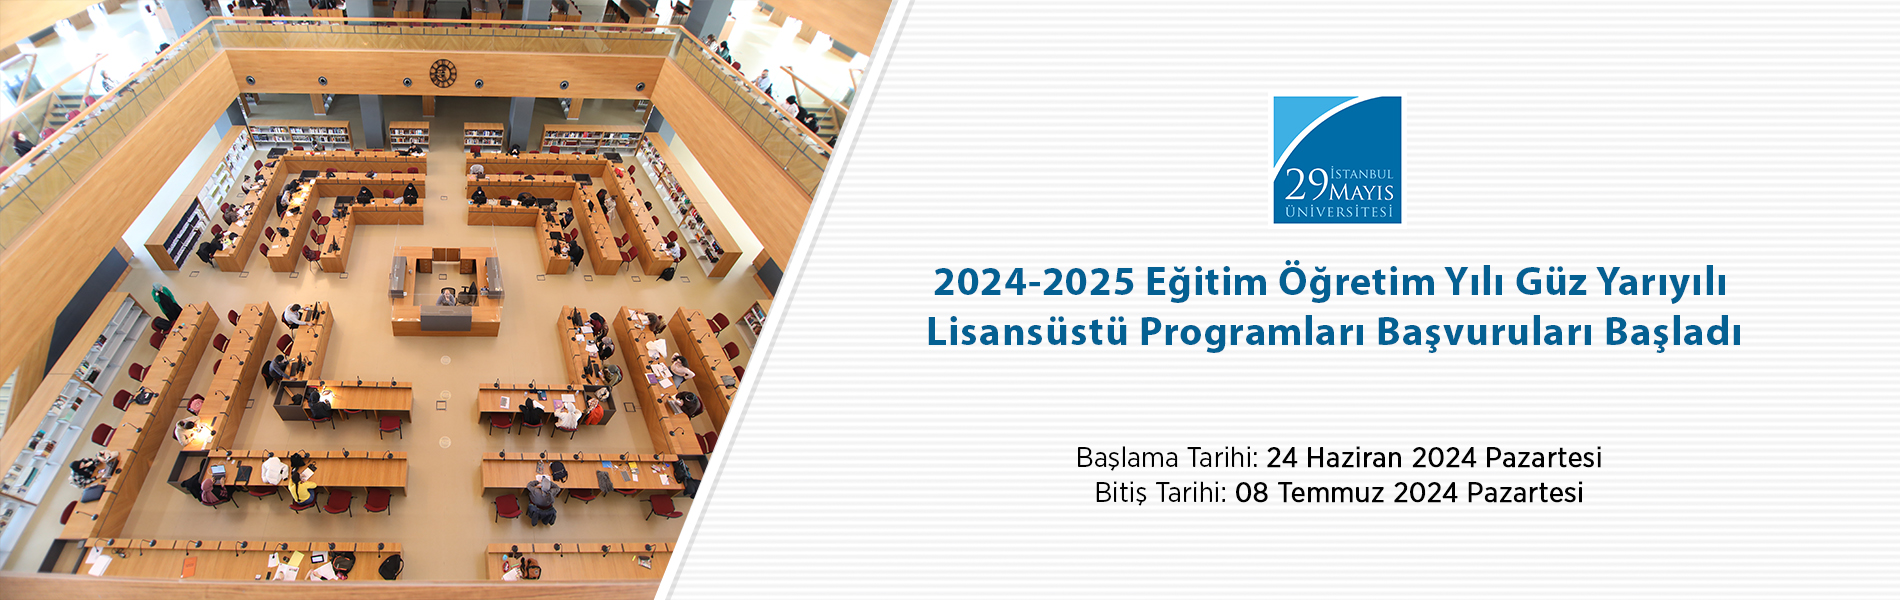 2024-2025 Eğitim Öğretim Yılı Güz Yarıyılı Lisansüstü Programları Başvuruları